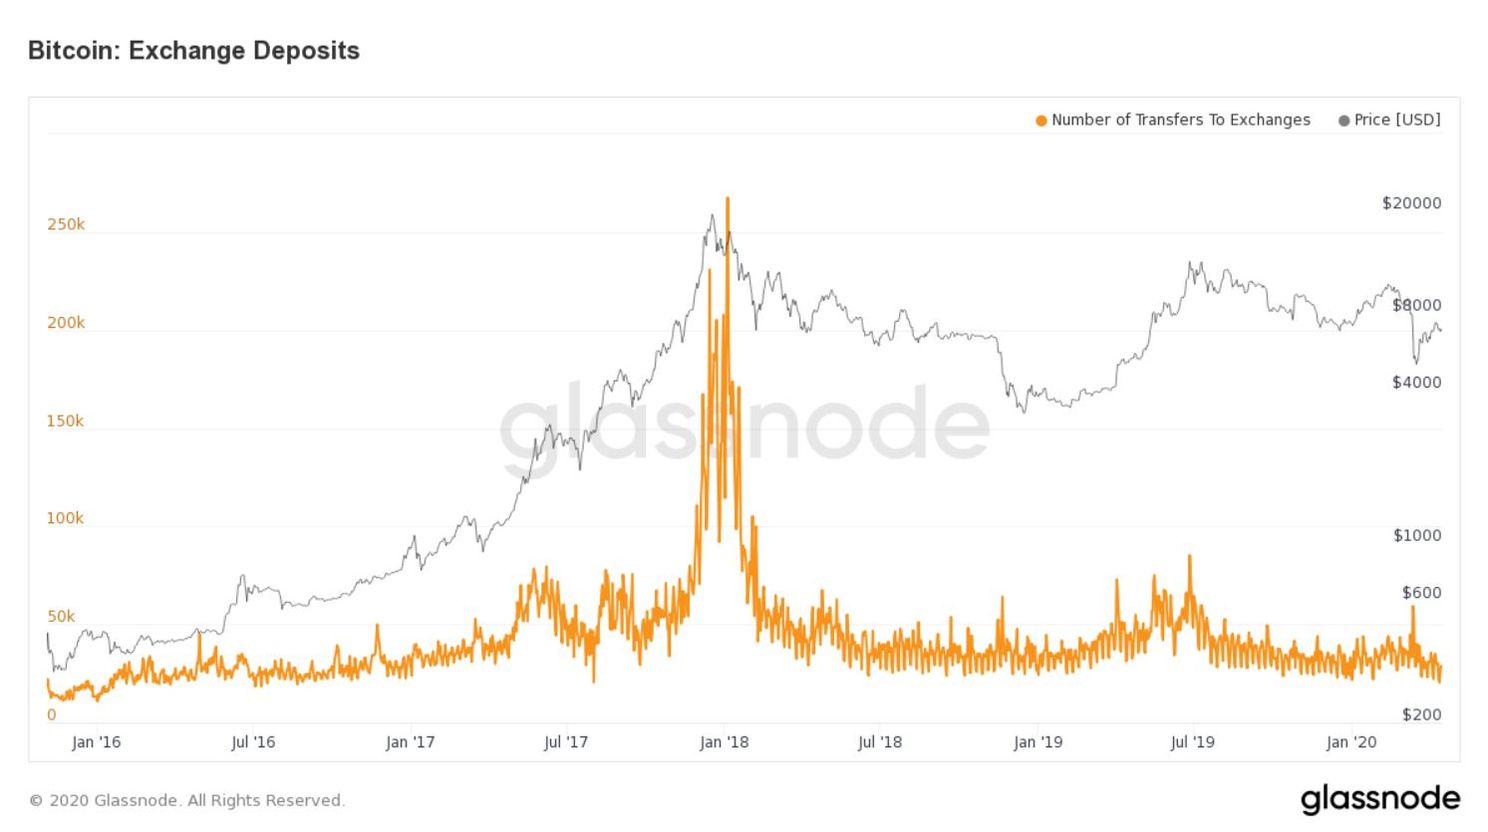 Bitcoin betalingen richting beurzen bereikt laagste punt sinds 2016